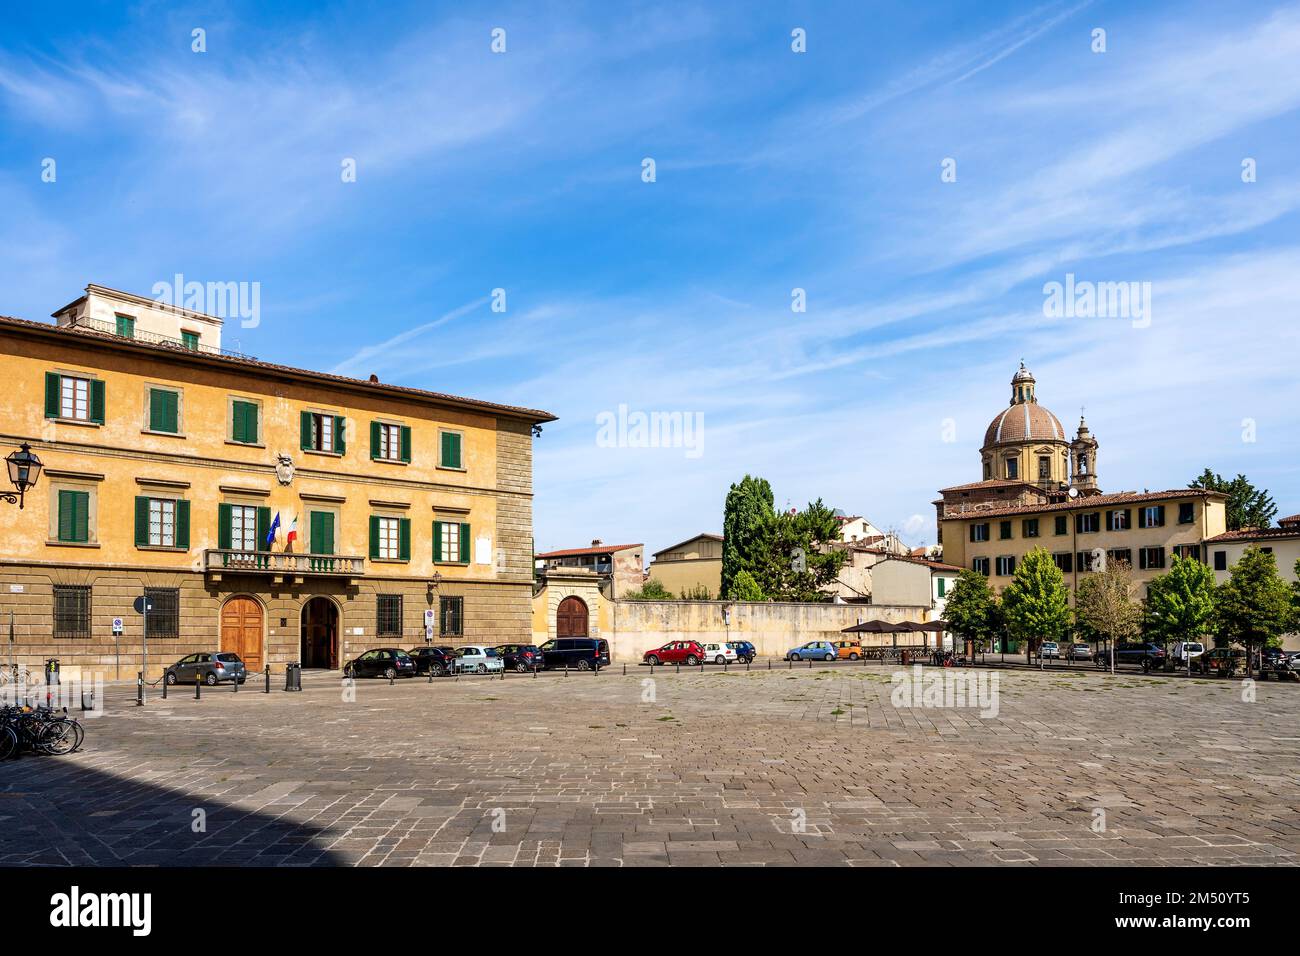 La place de Santa Maria del Carmine dans le quartier de San Frediano, Florence, Toscane, Italie, avec la Chiesa del Cestello en arrière-plan. Banque D'Images